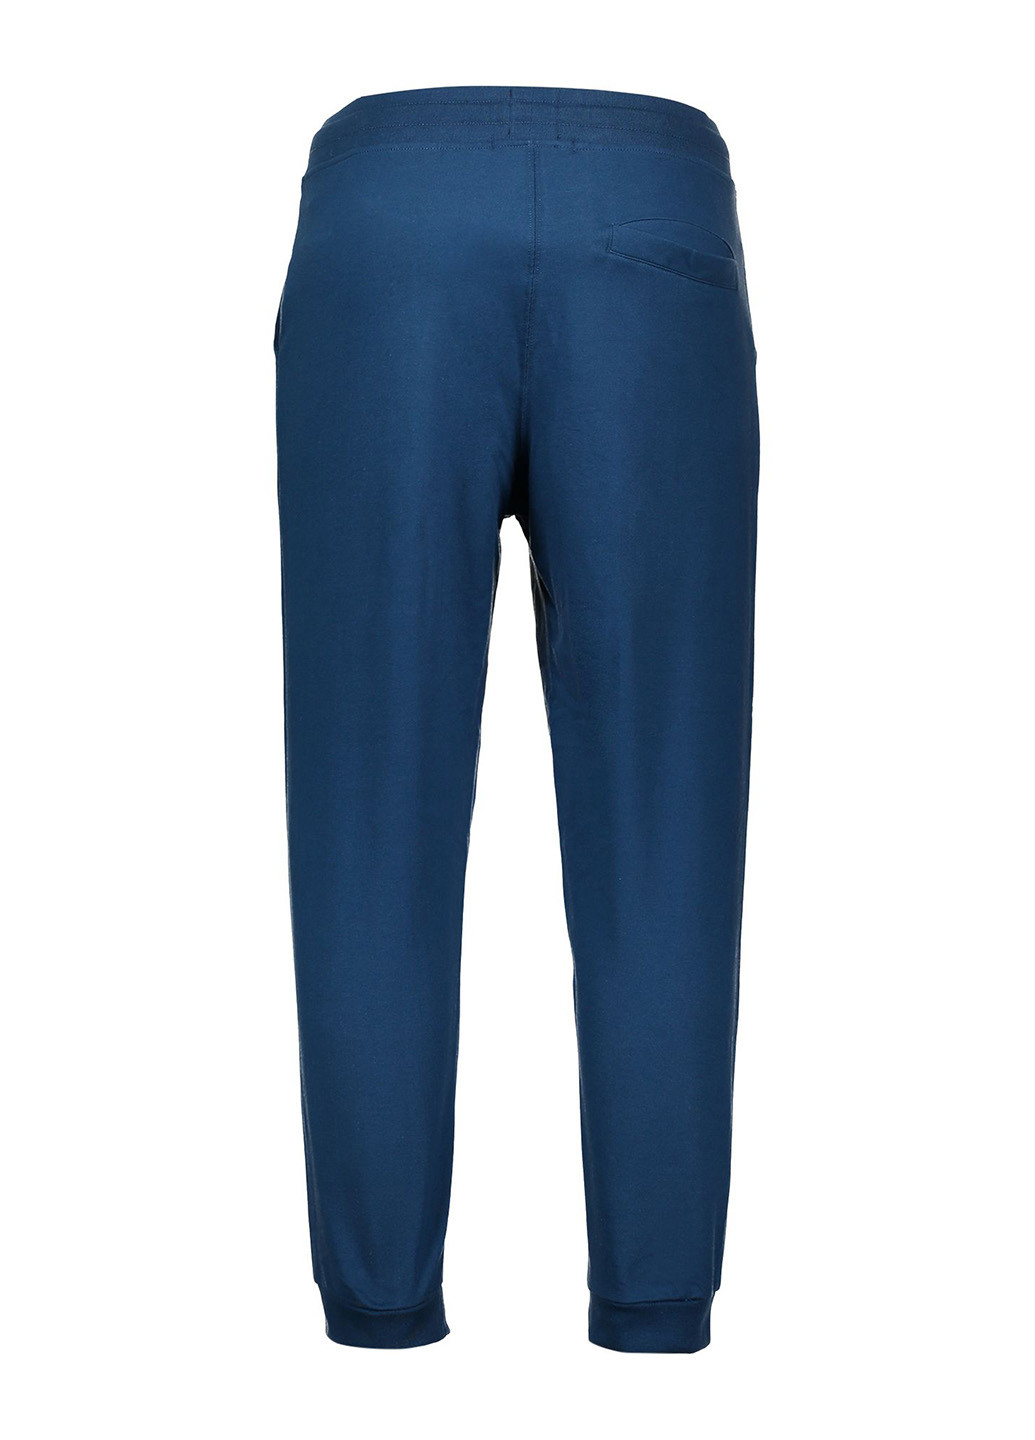 Синие кэжуал демисезонные джоггеры брюки Piazza Italia